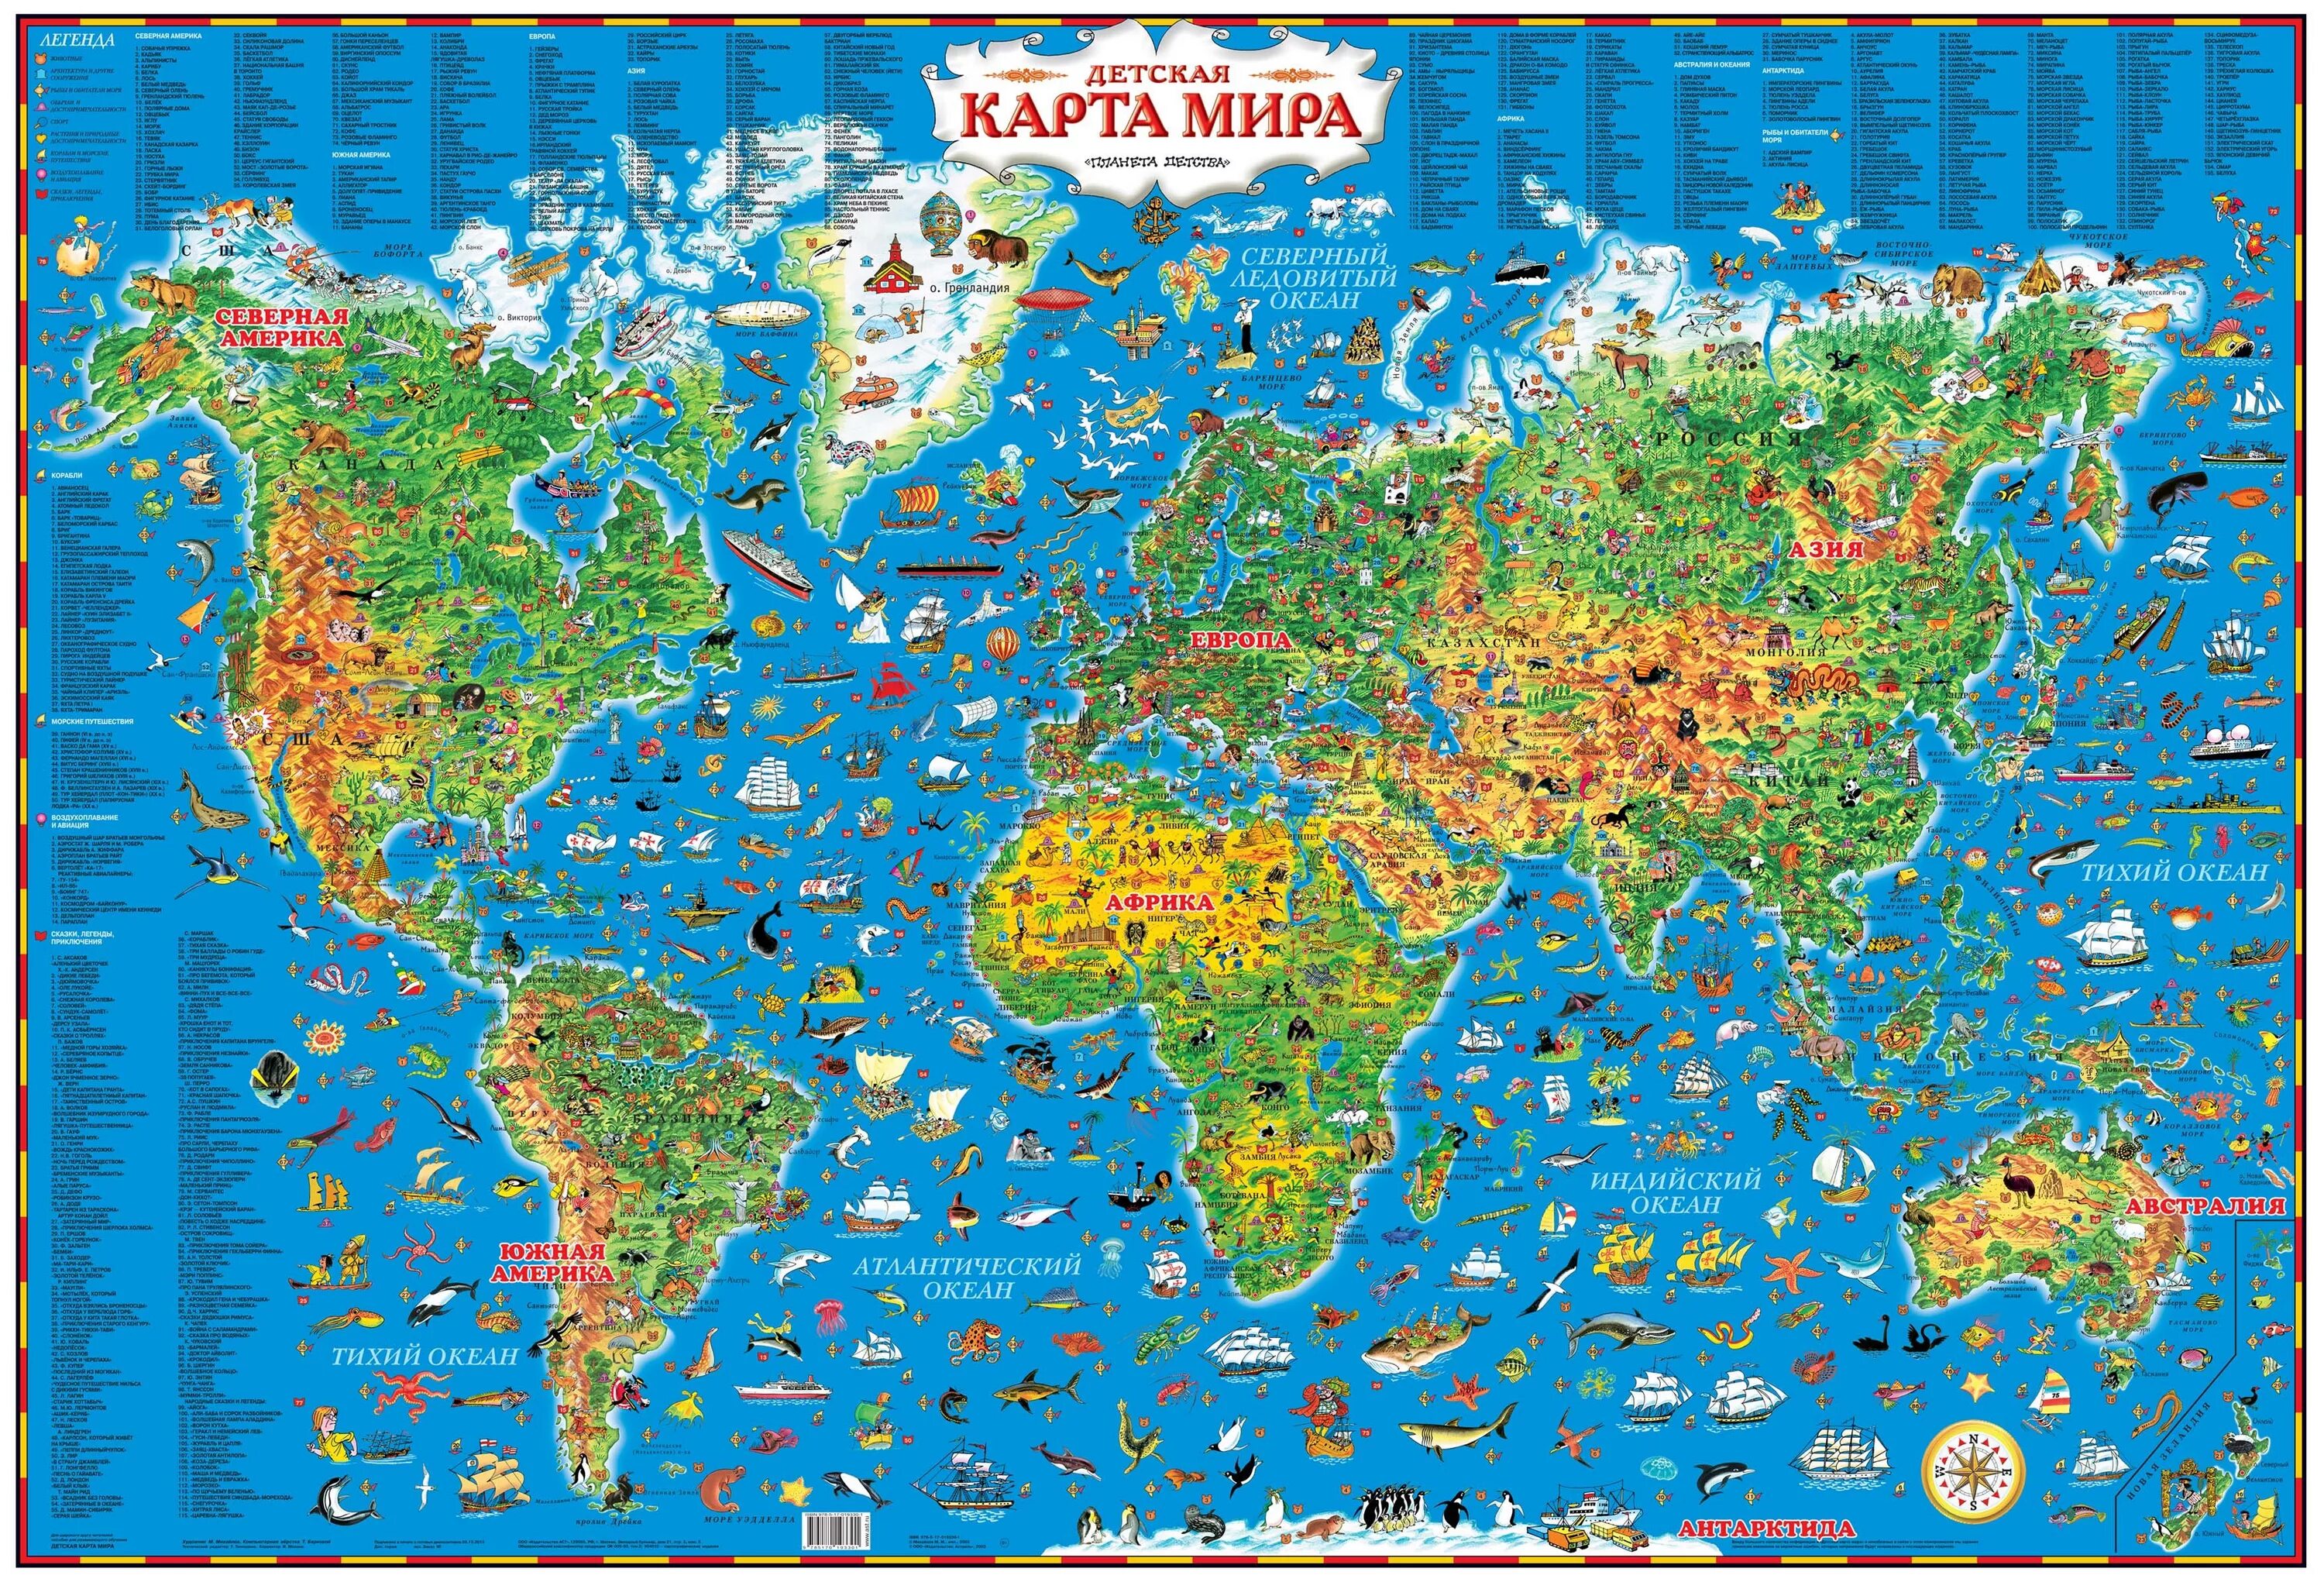 More world types. Географическая карта для детей.